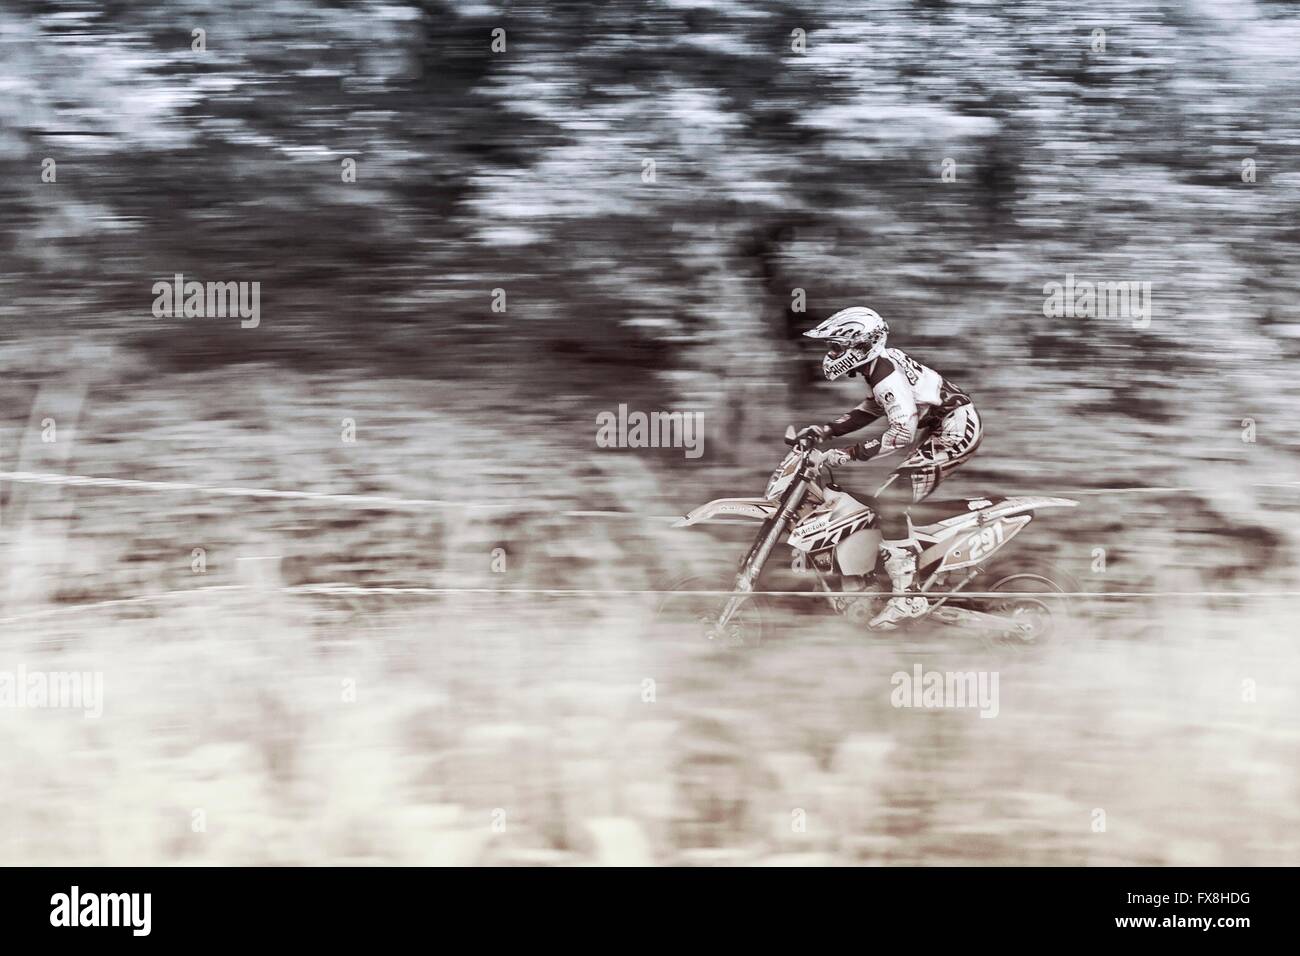 Enduro motociclista accelerando nel fango Foto Stock